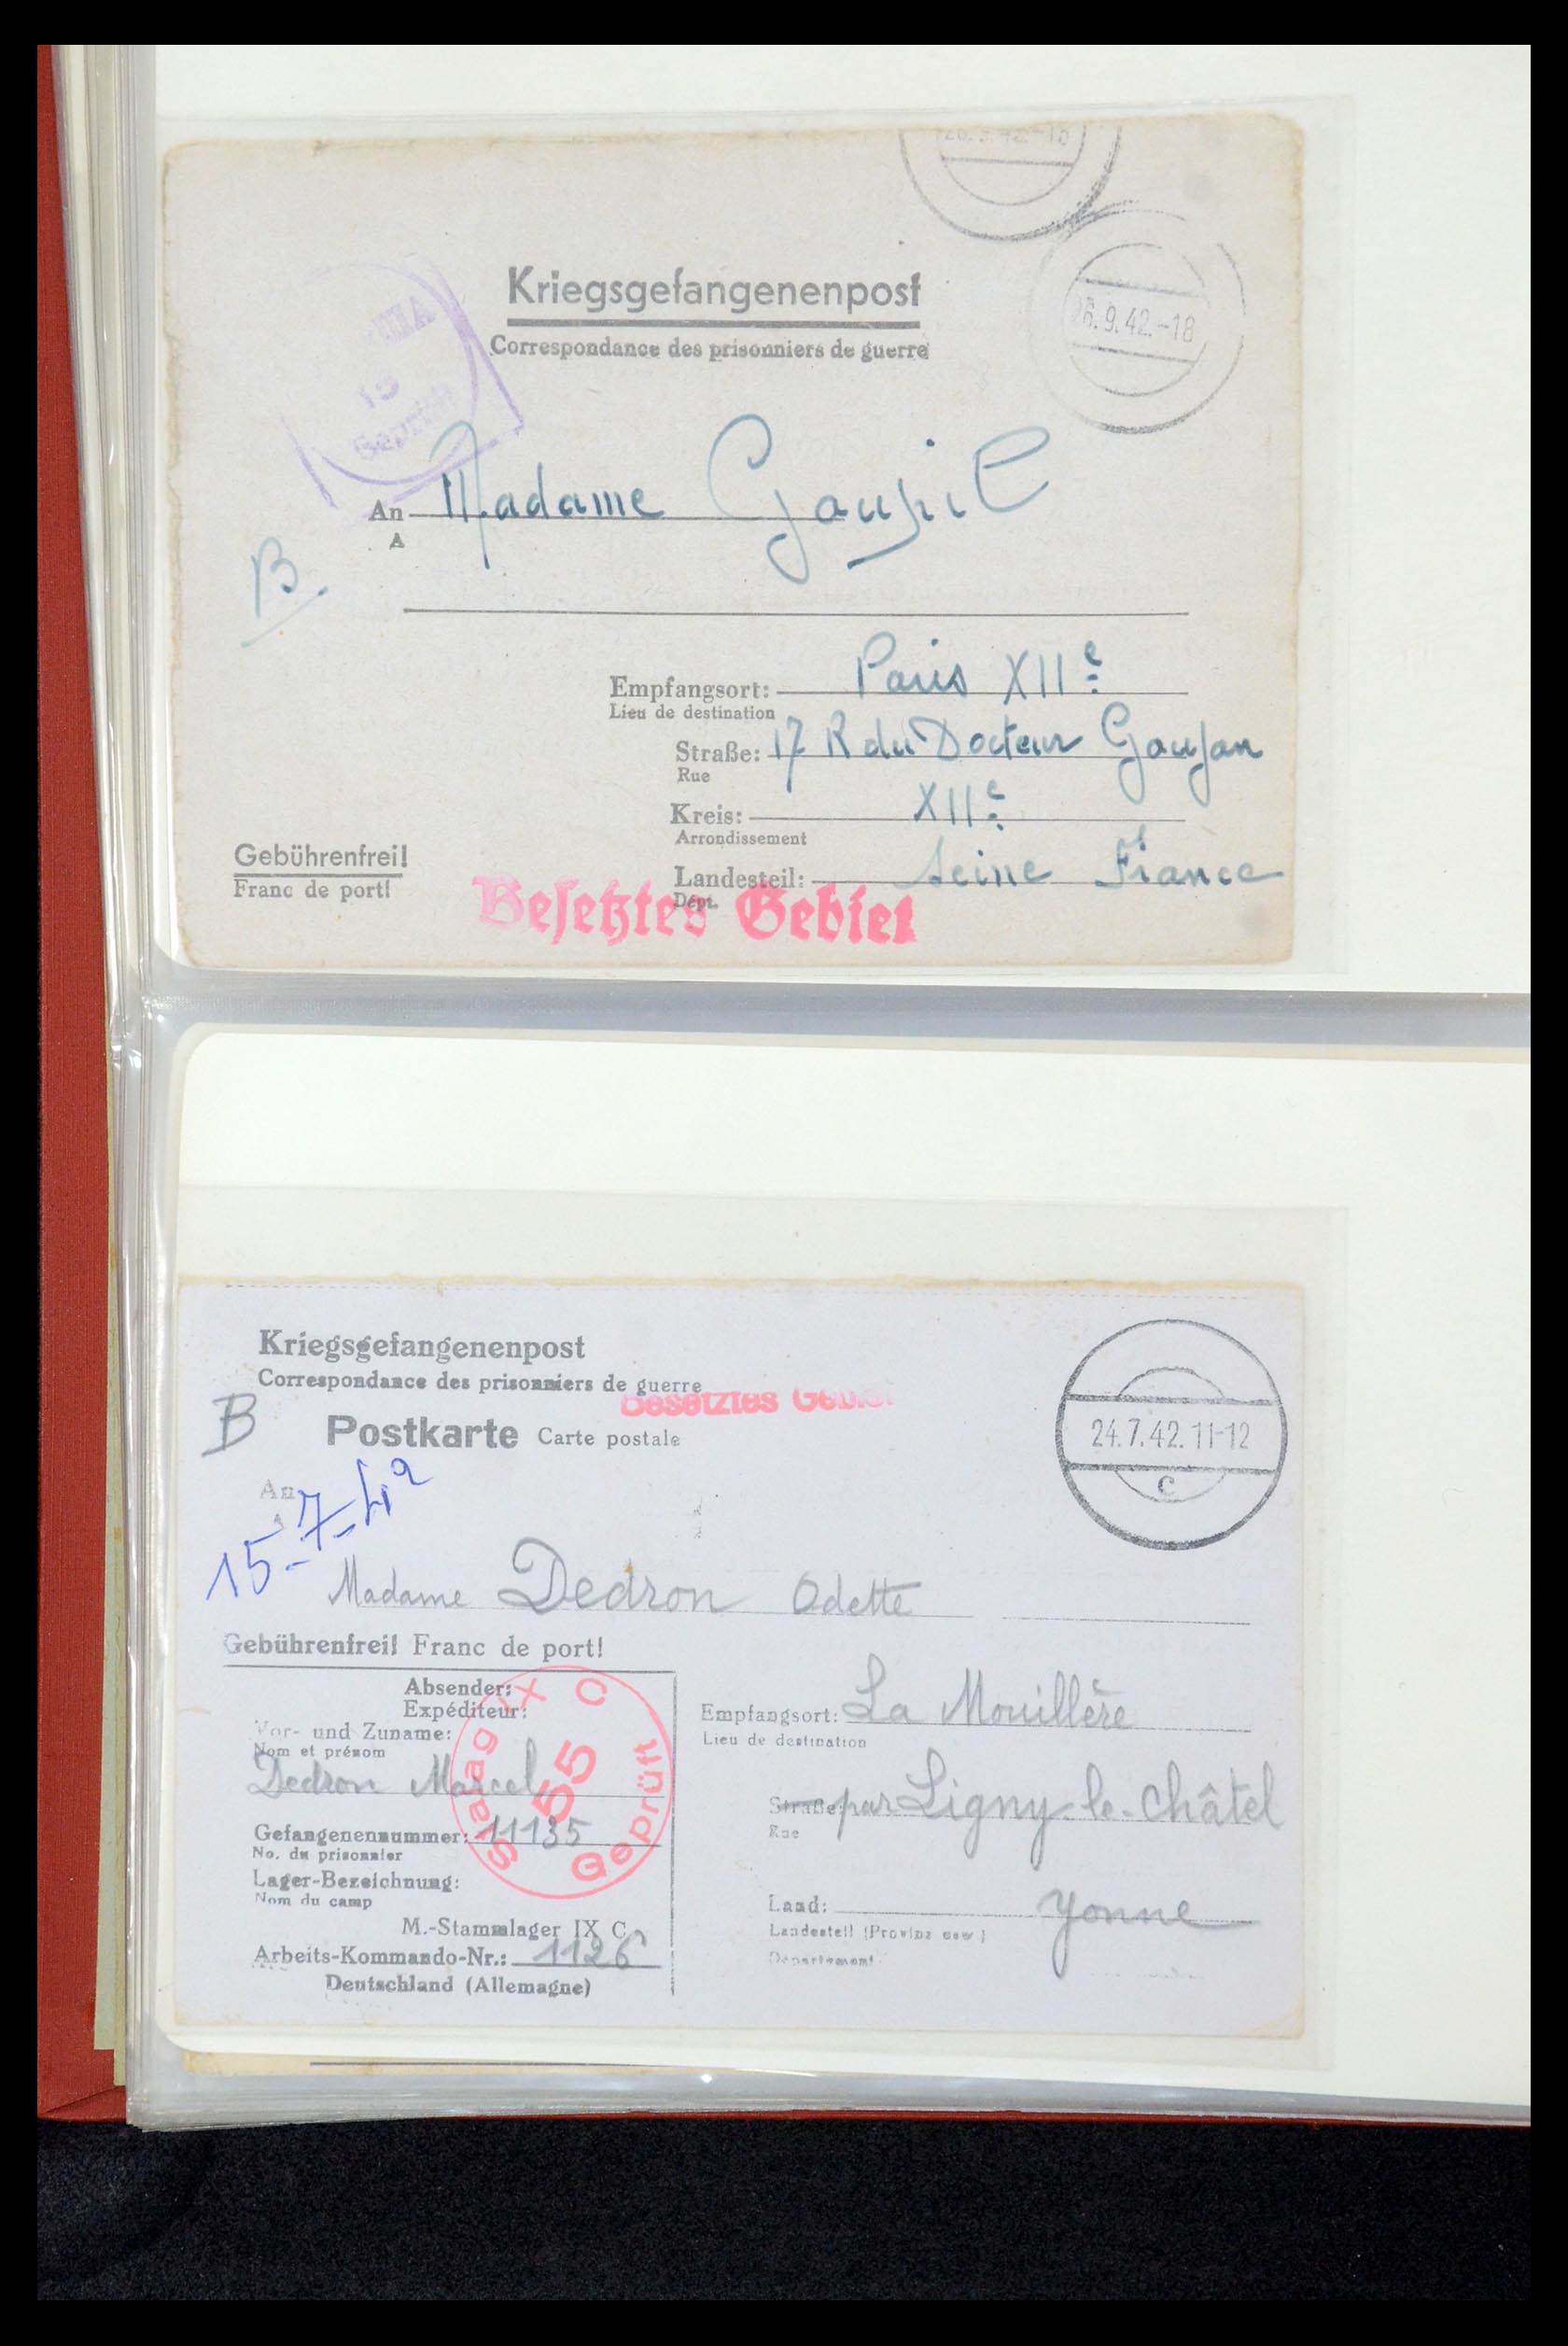 35599 036 - Stamp Collection 35599 Germany prisoner of war cards 1940-1944.